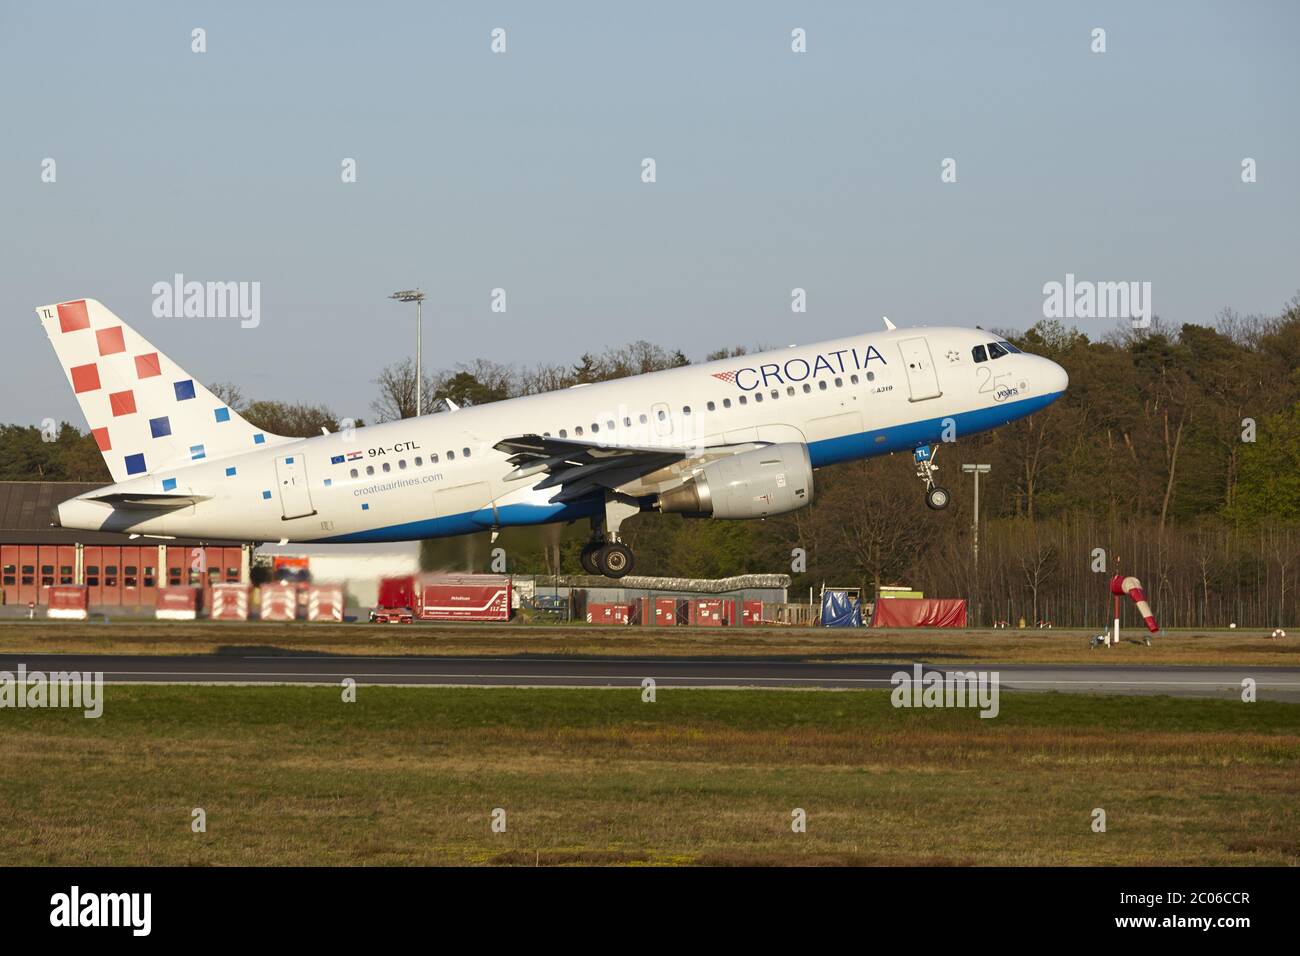 Aeroporto di Francoforte - lancio di un Airbus A319 da Croatia Airlines Foto Stock